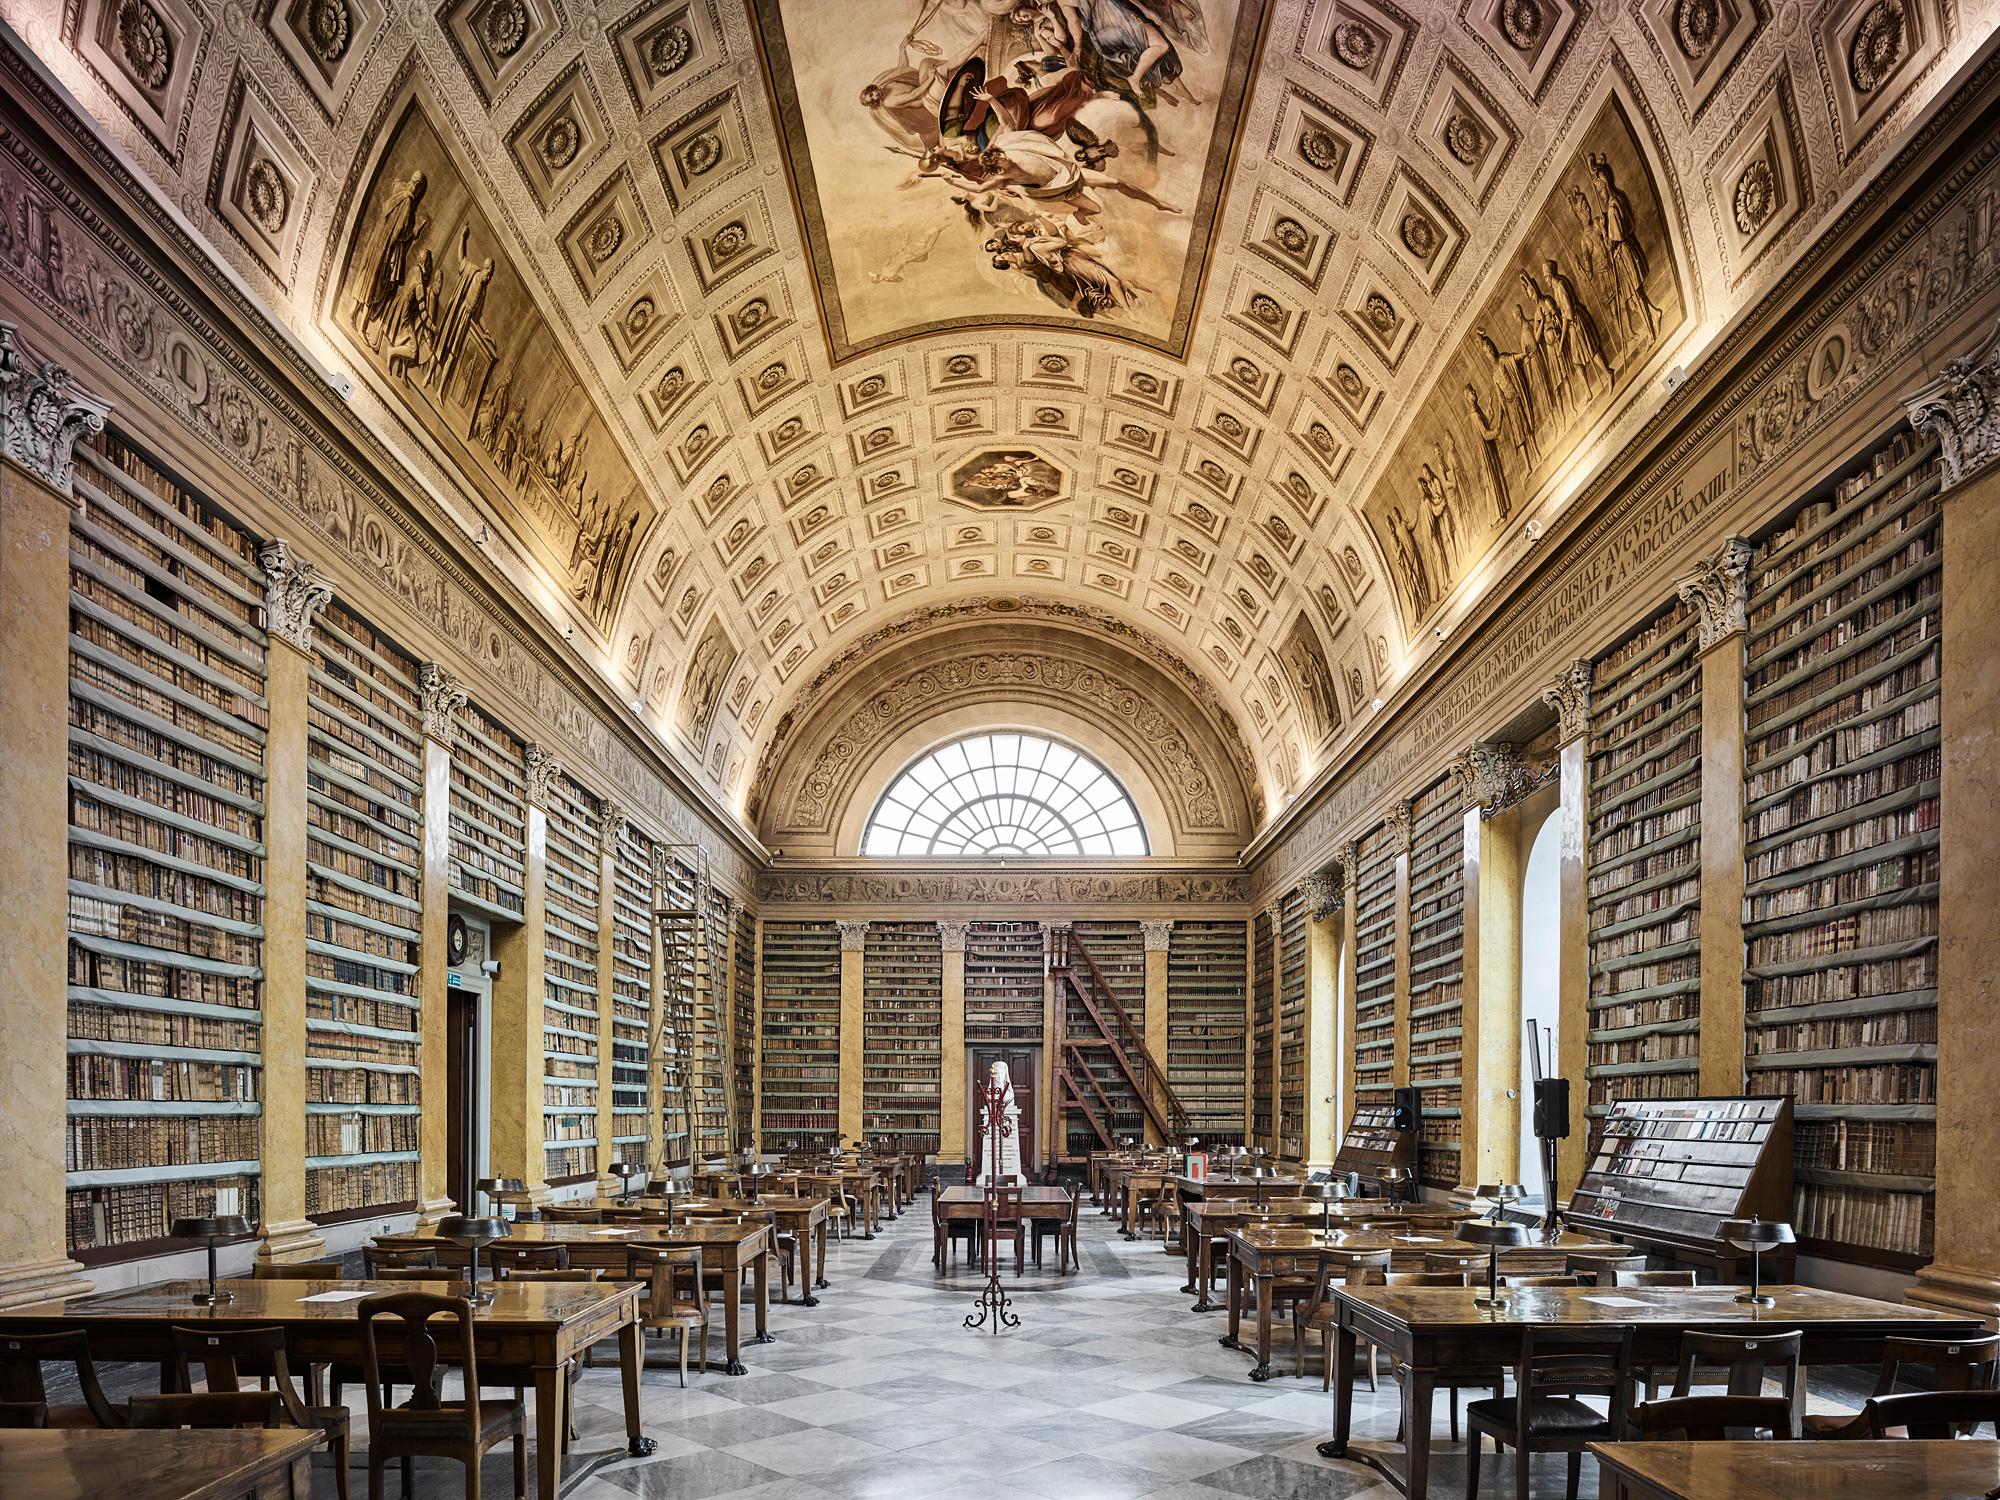  Library, Parma,  Italy (32" X 40")